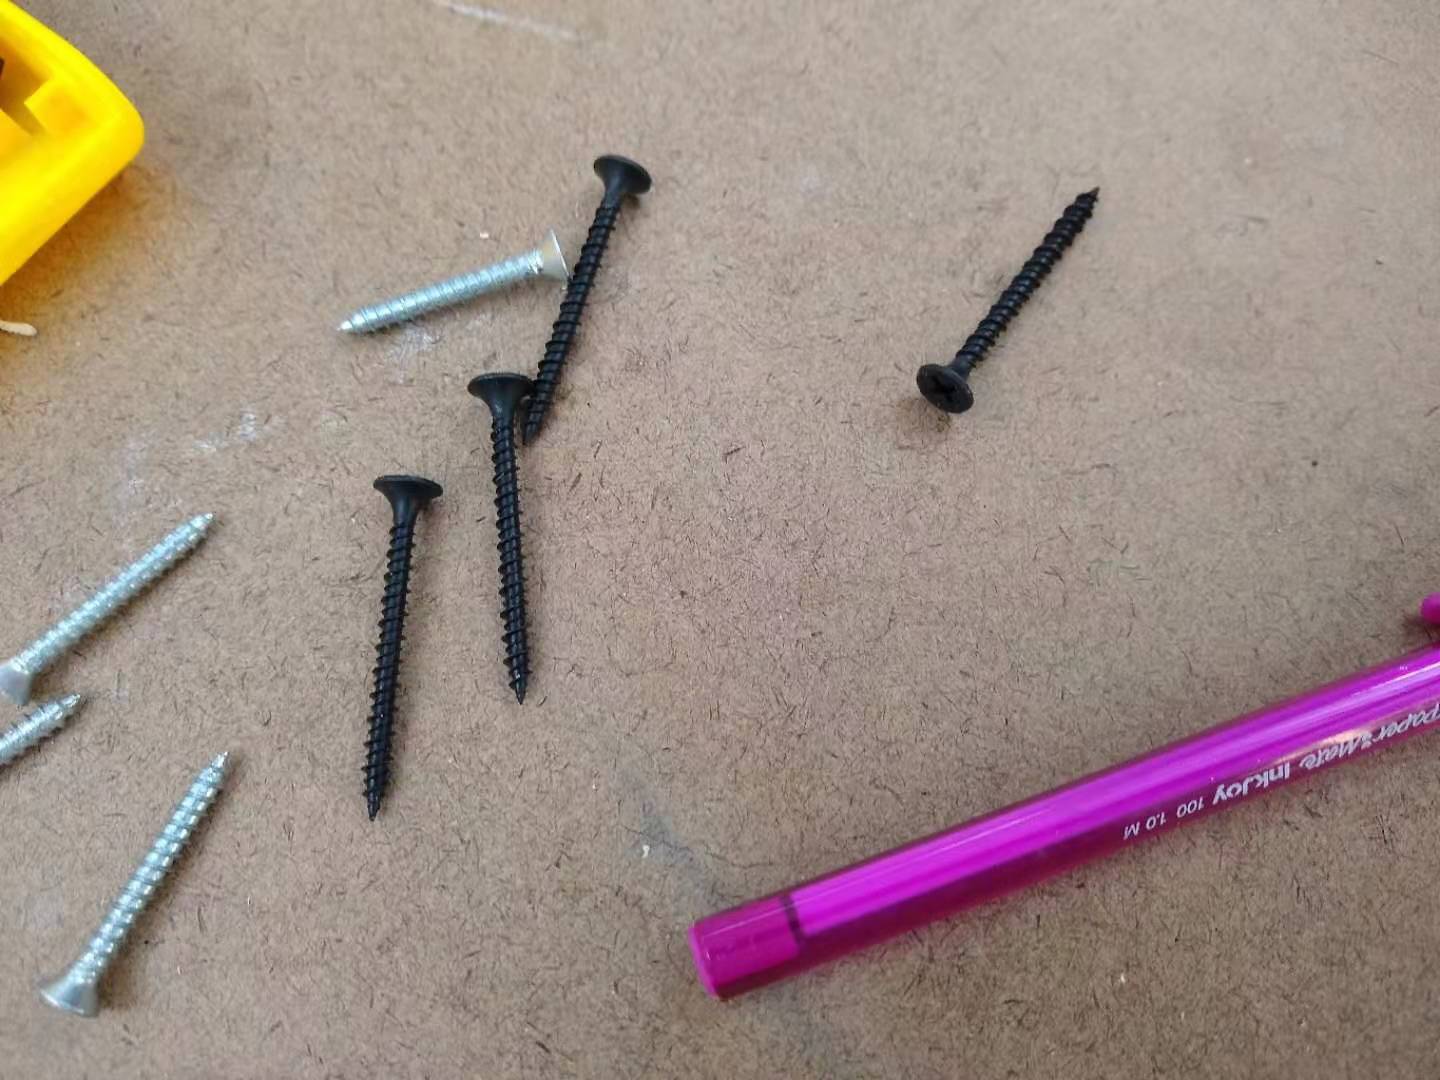 A few screws.